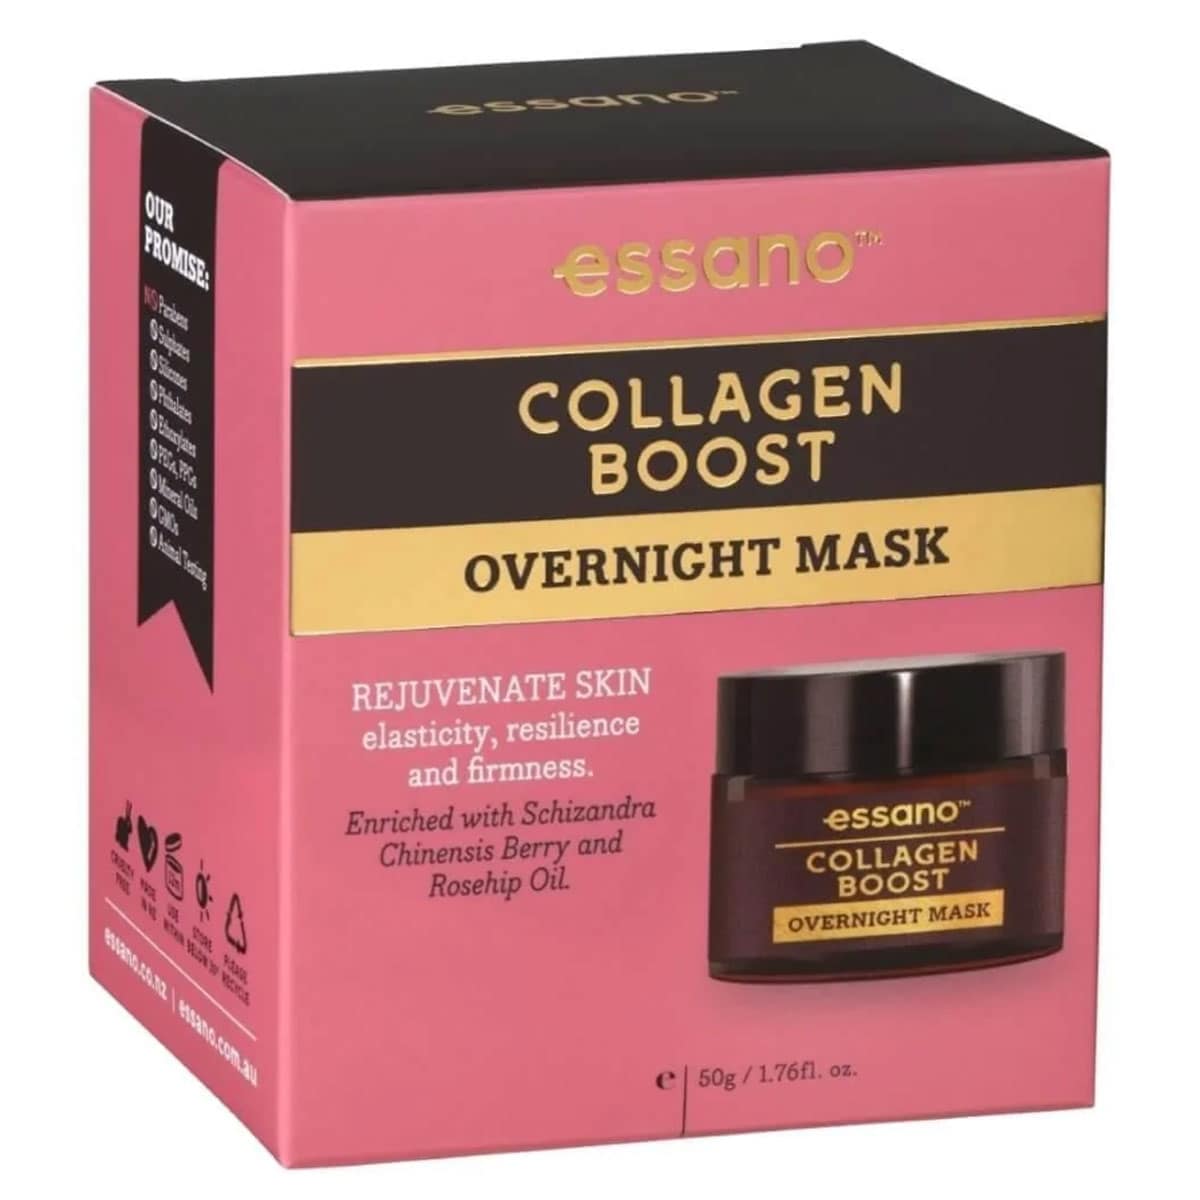 Essano Collagen Boost Overnight Mask 50g